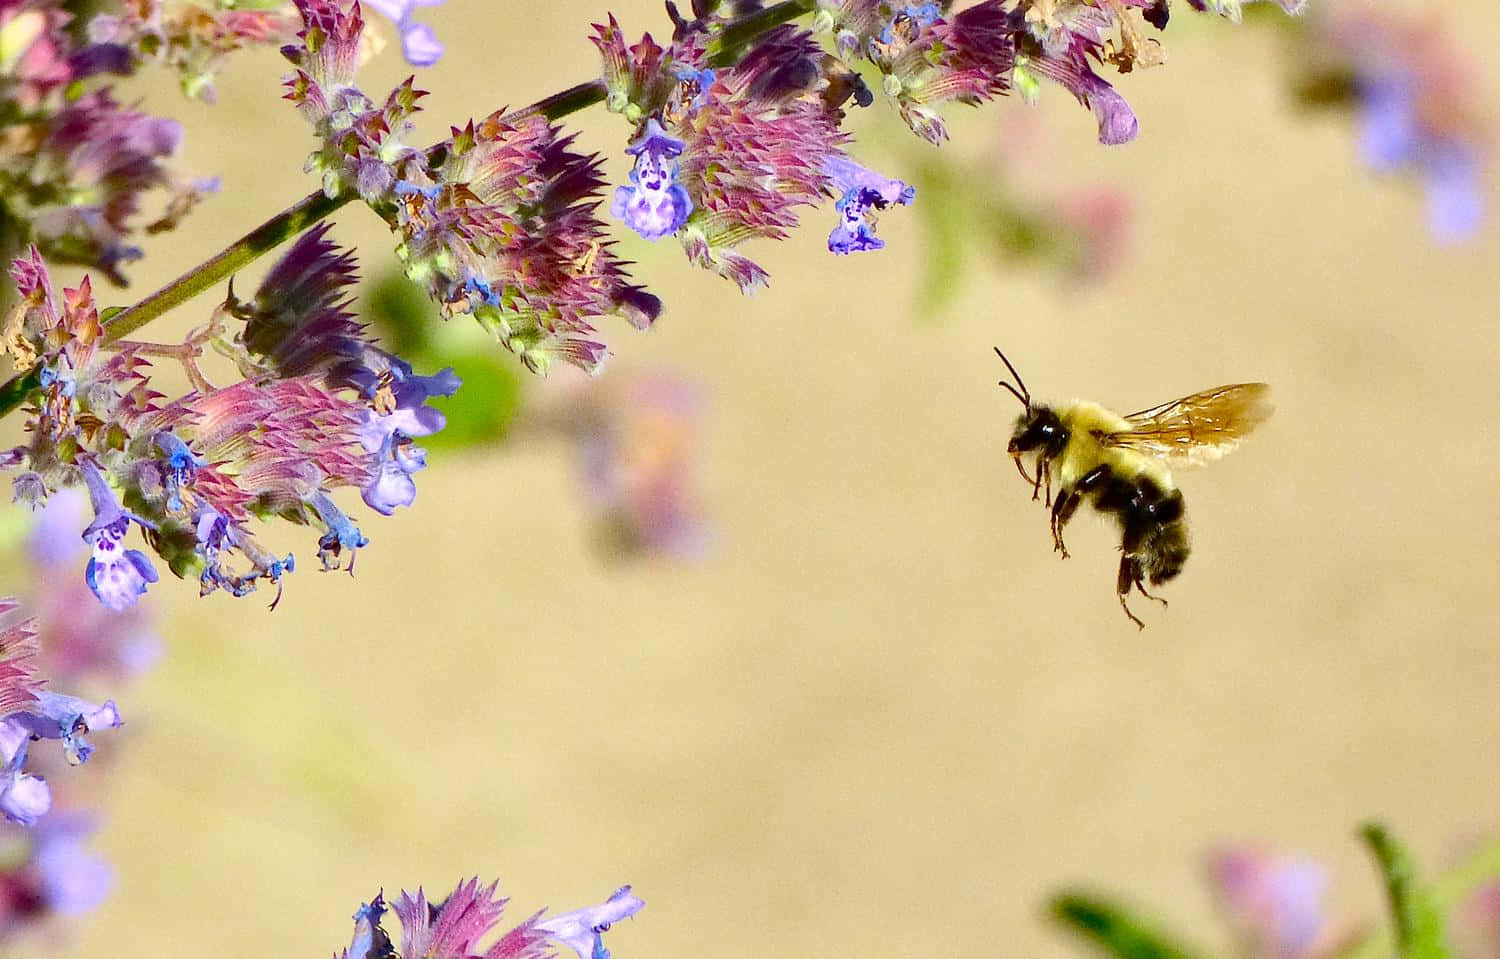 Solitary Bee Flight Near Flowers Wallpaper